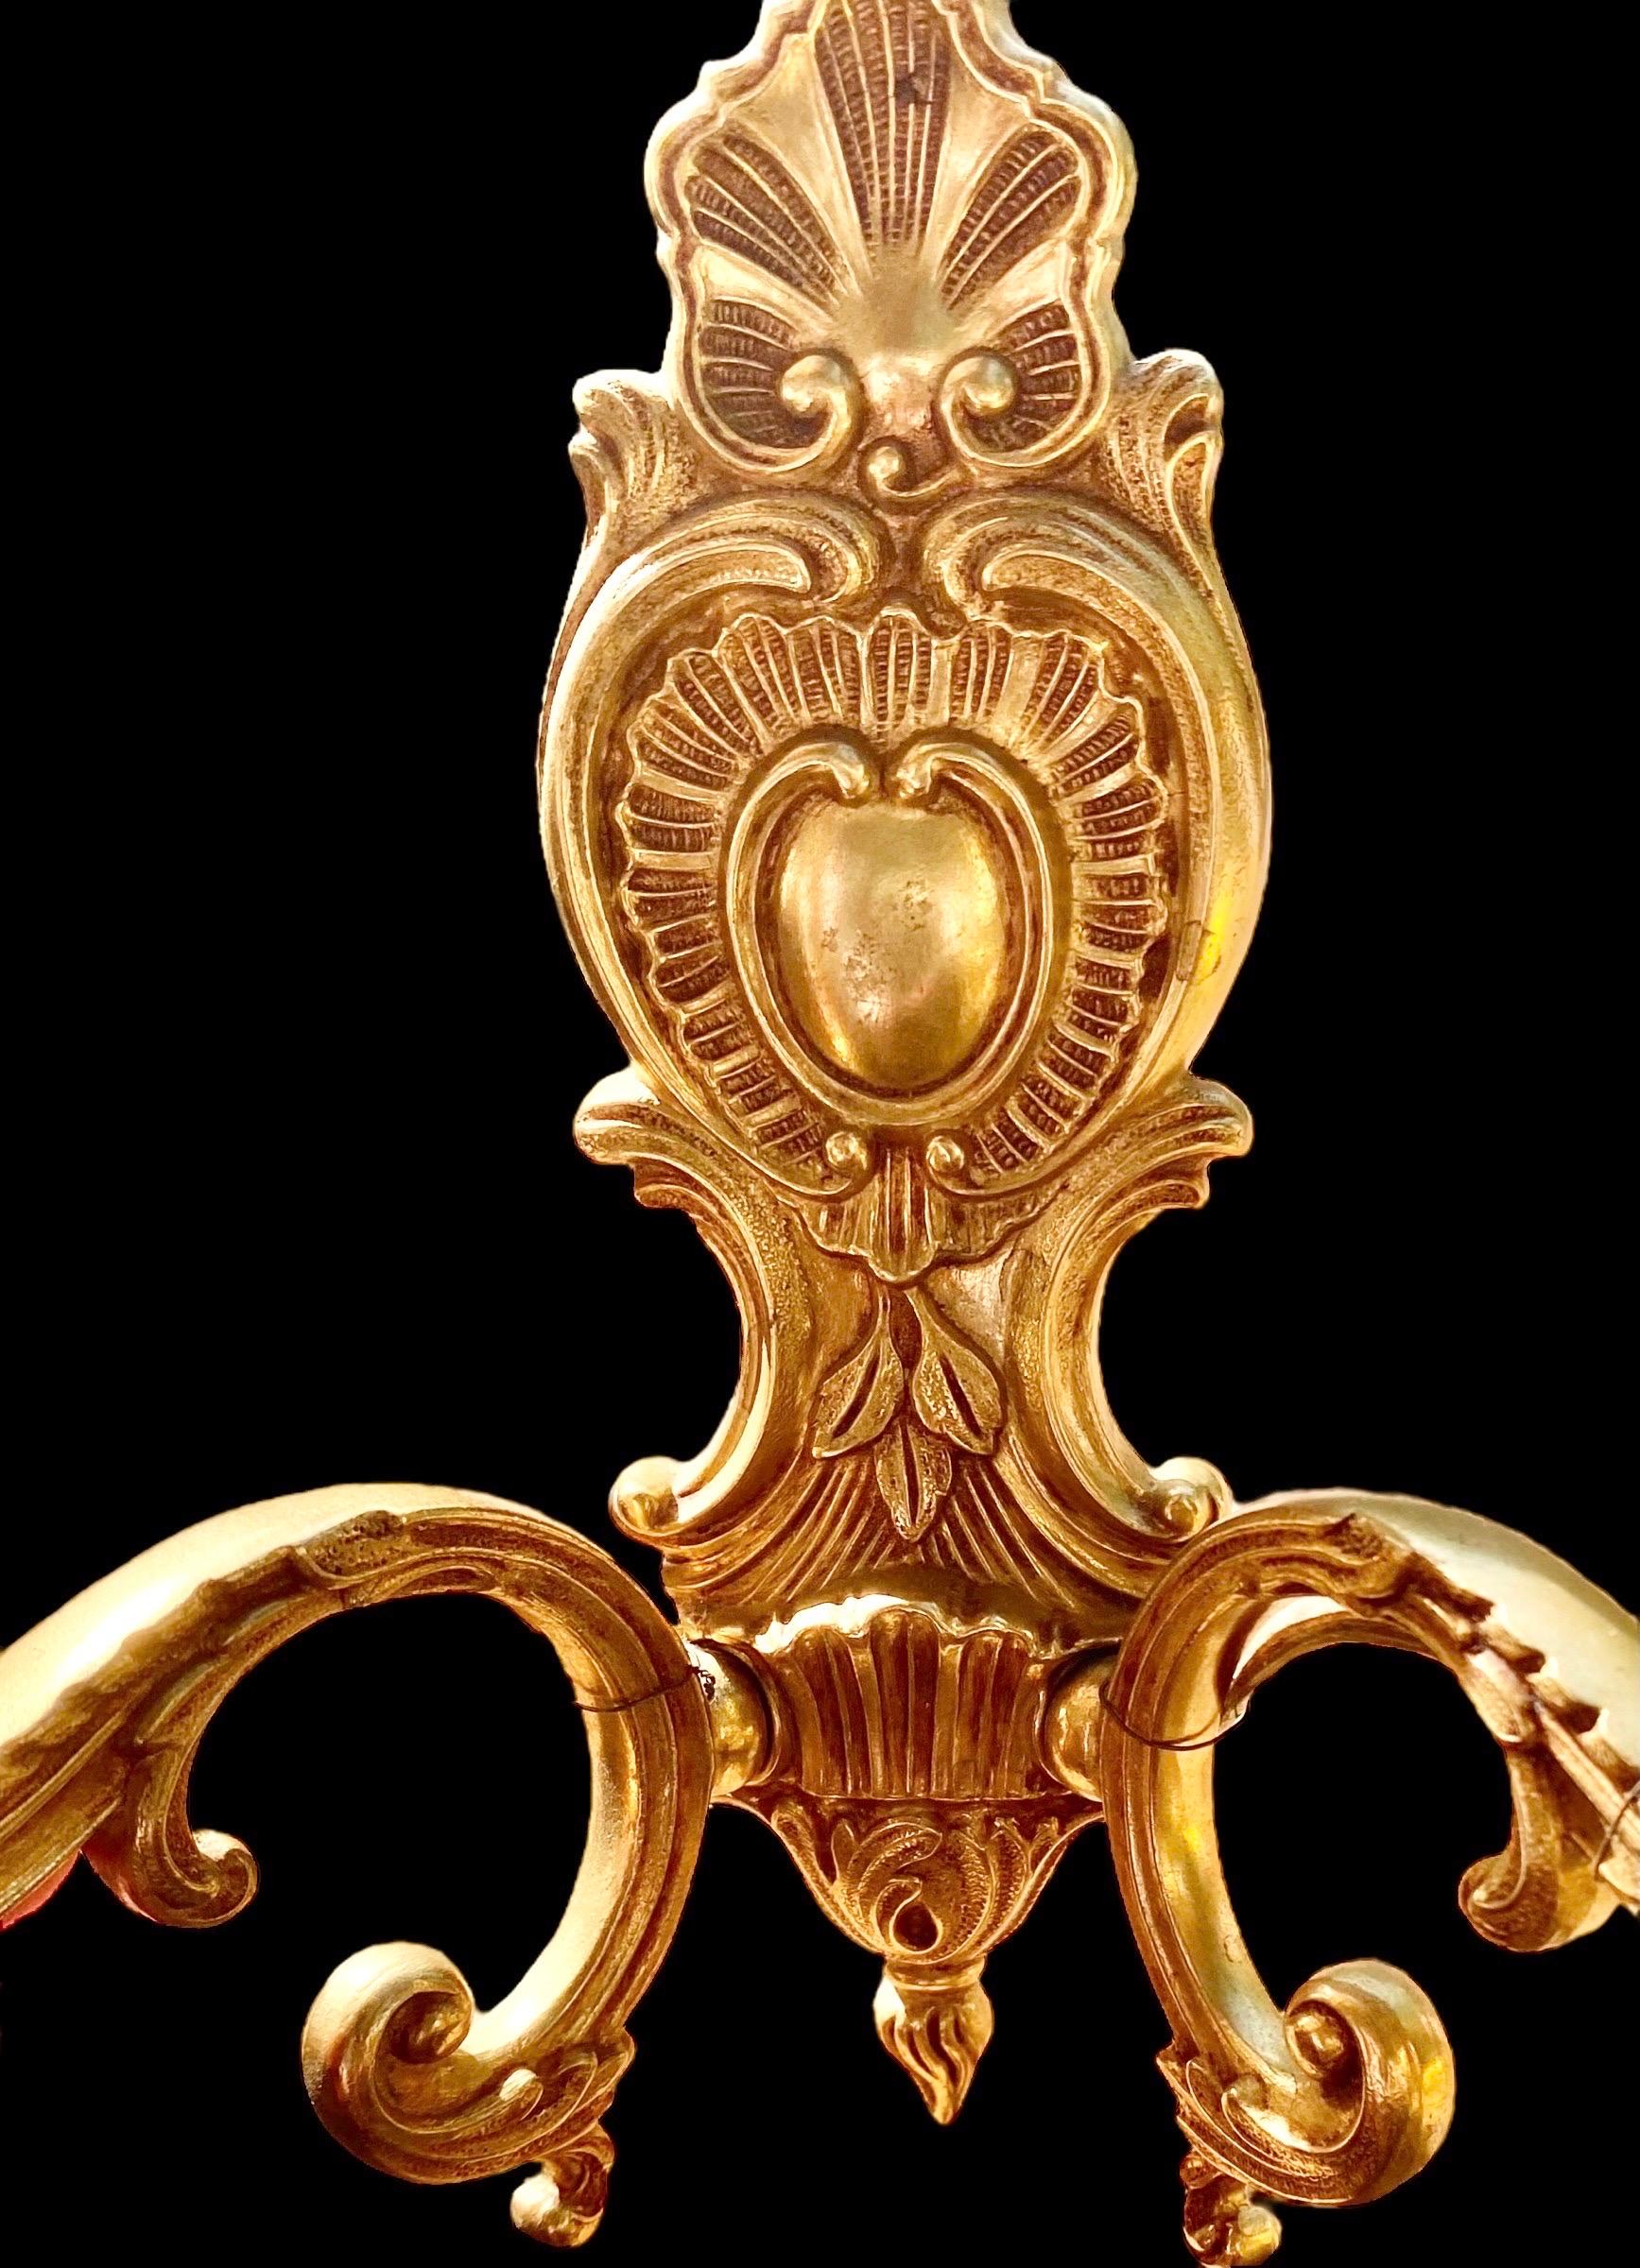 Superbe paire d'appliques électrifiées en bronze doré d'époque Arte Antiques, à deux bras, décorées de coquillages et de cabochons, avec des bras en volute à décor de feuilles et des chandeliers à feuilles.
Un bel ajout pour votre salle de bain